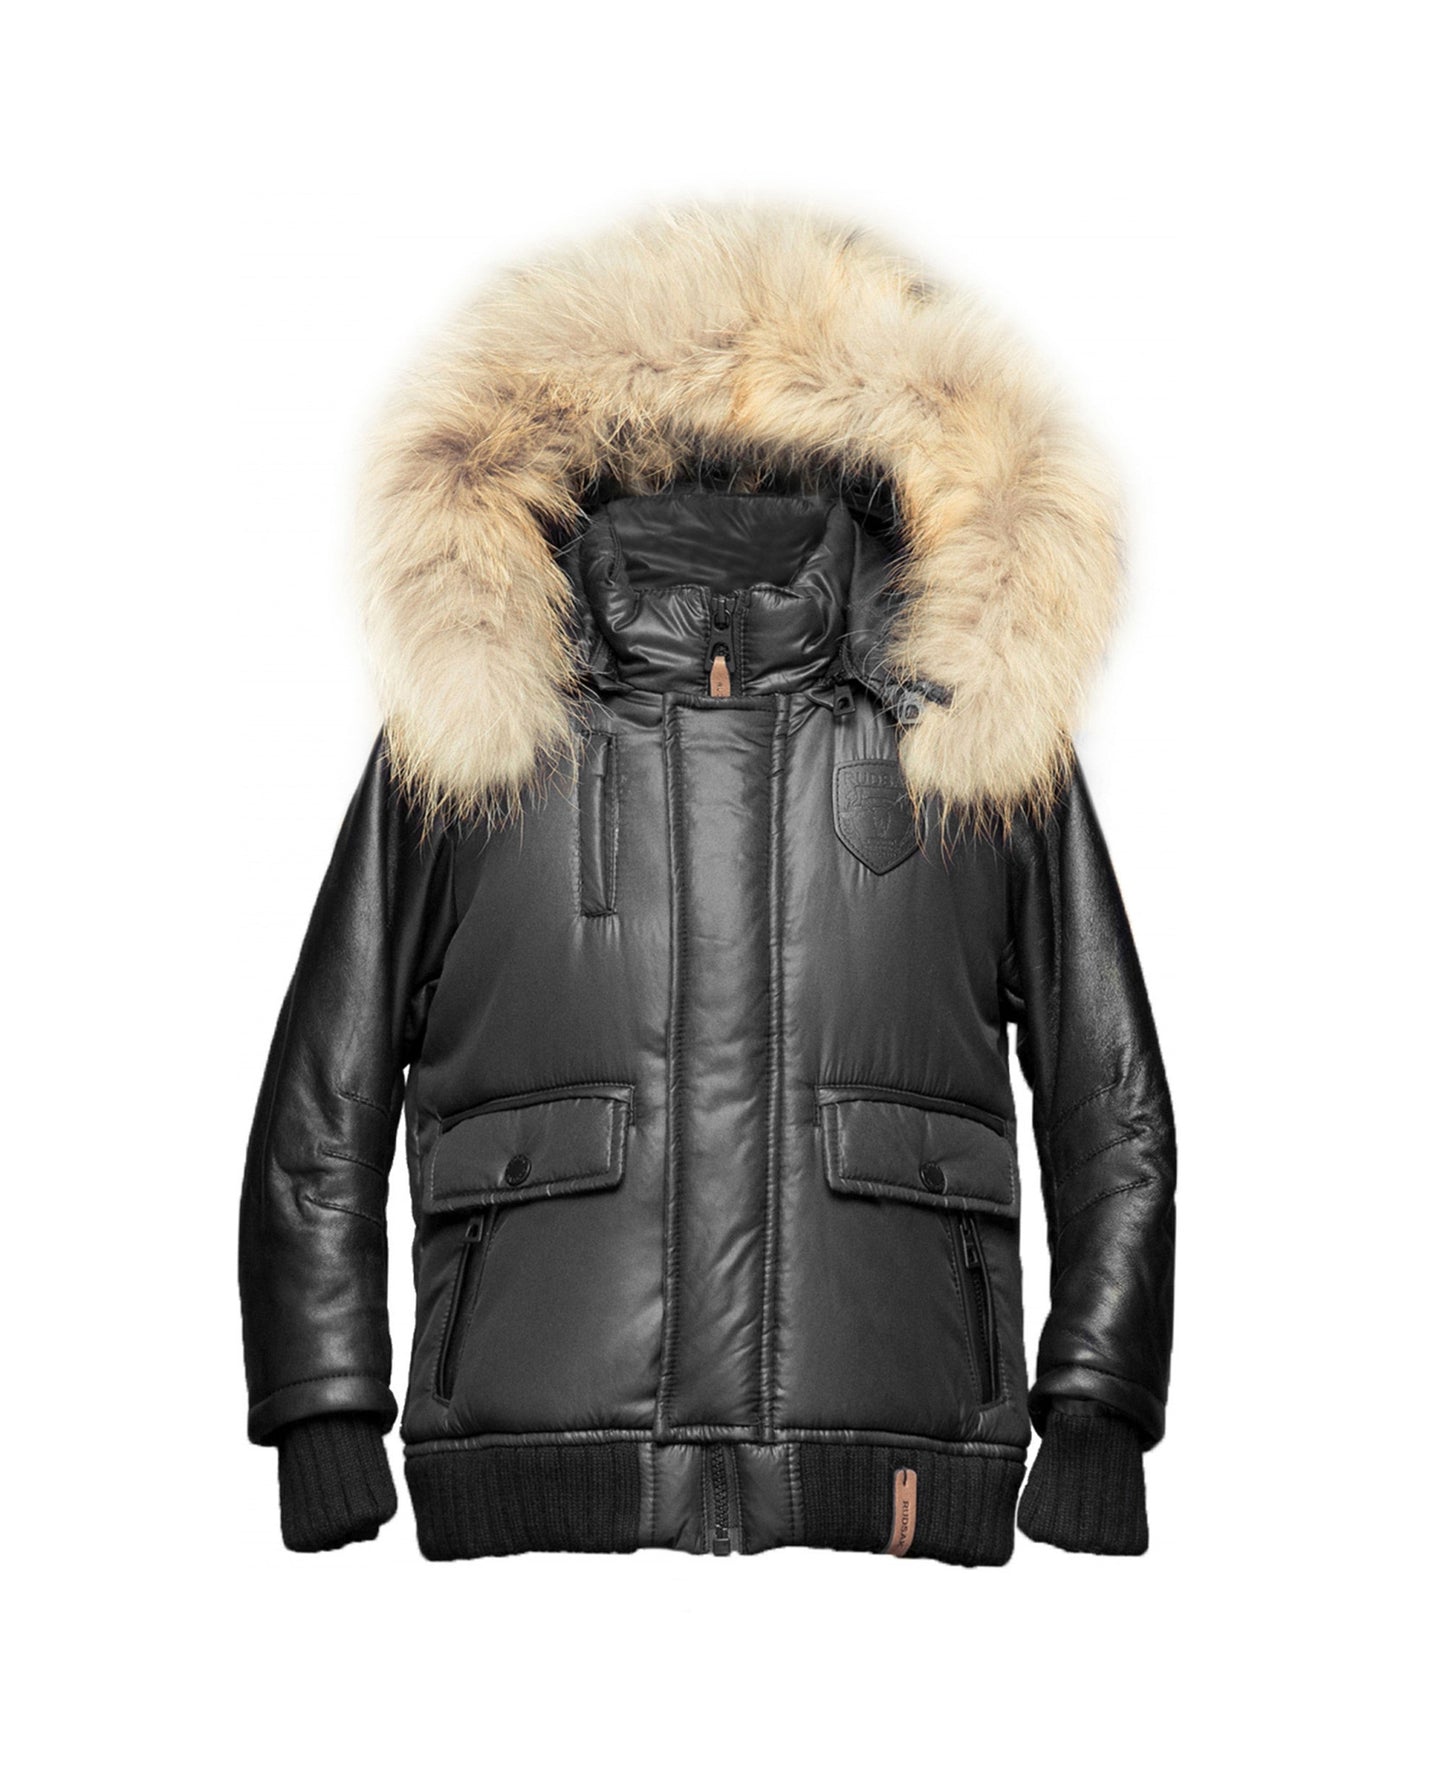 Lulu Unisex Jacket With Fur Trim - Dejavu NYC